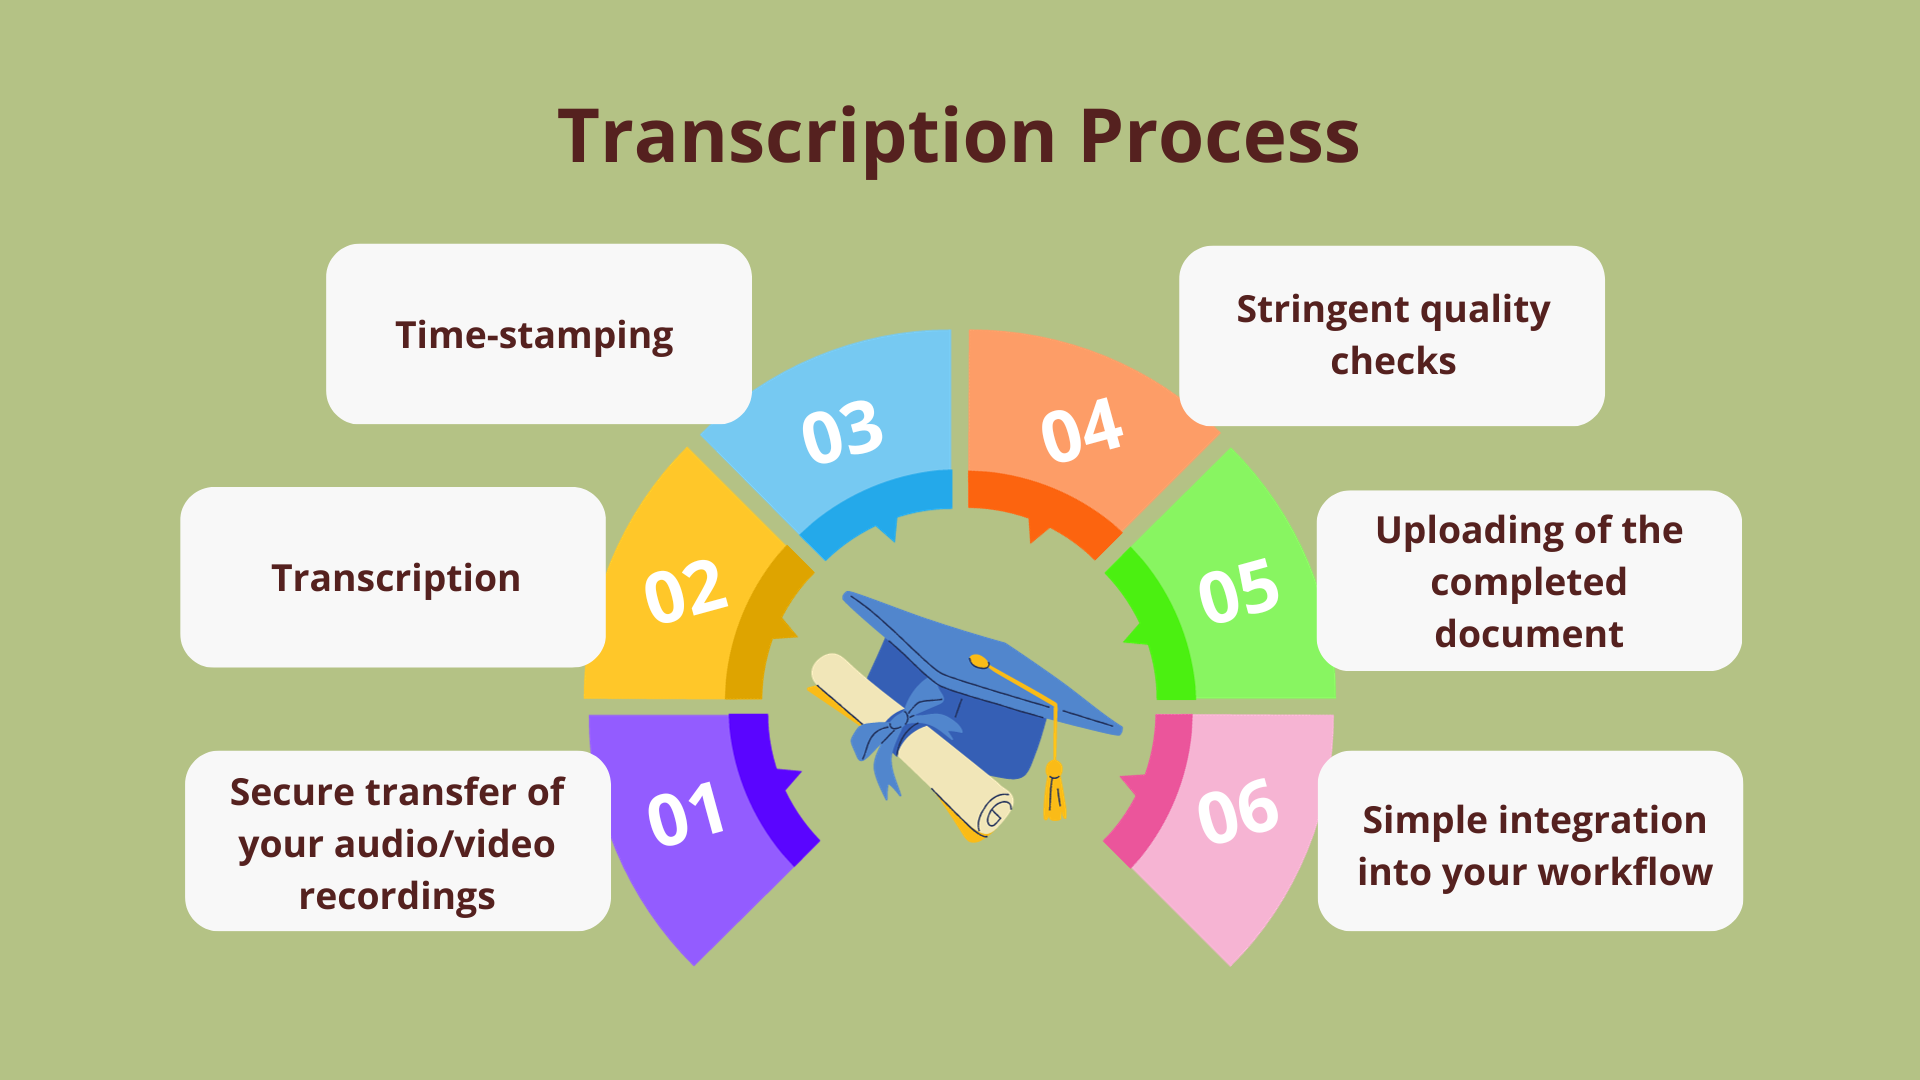 Our Transcription Process